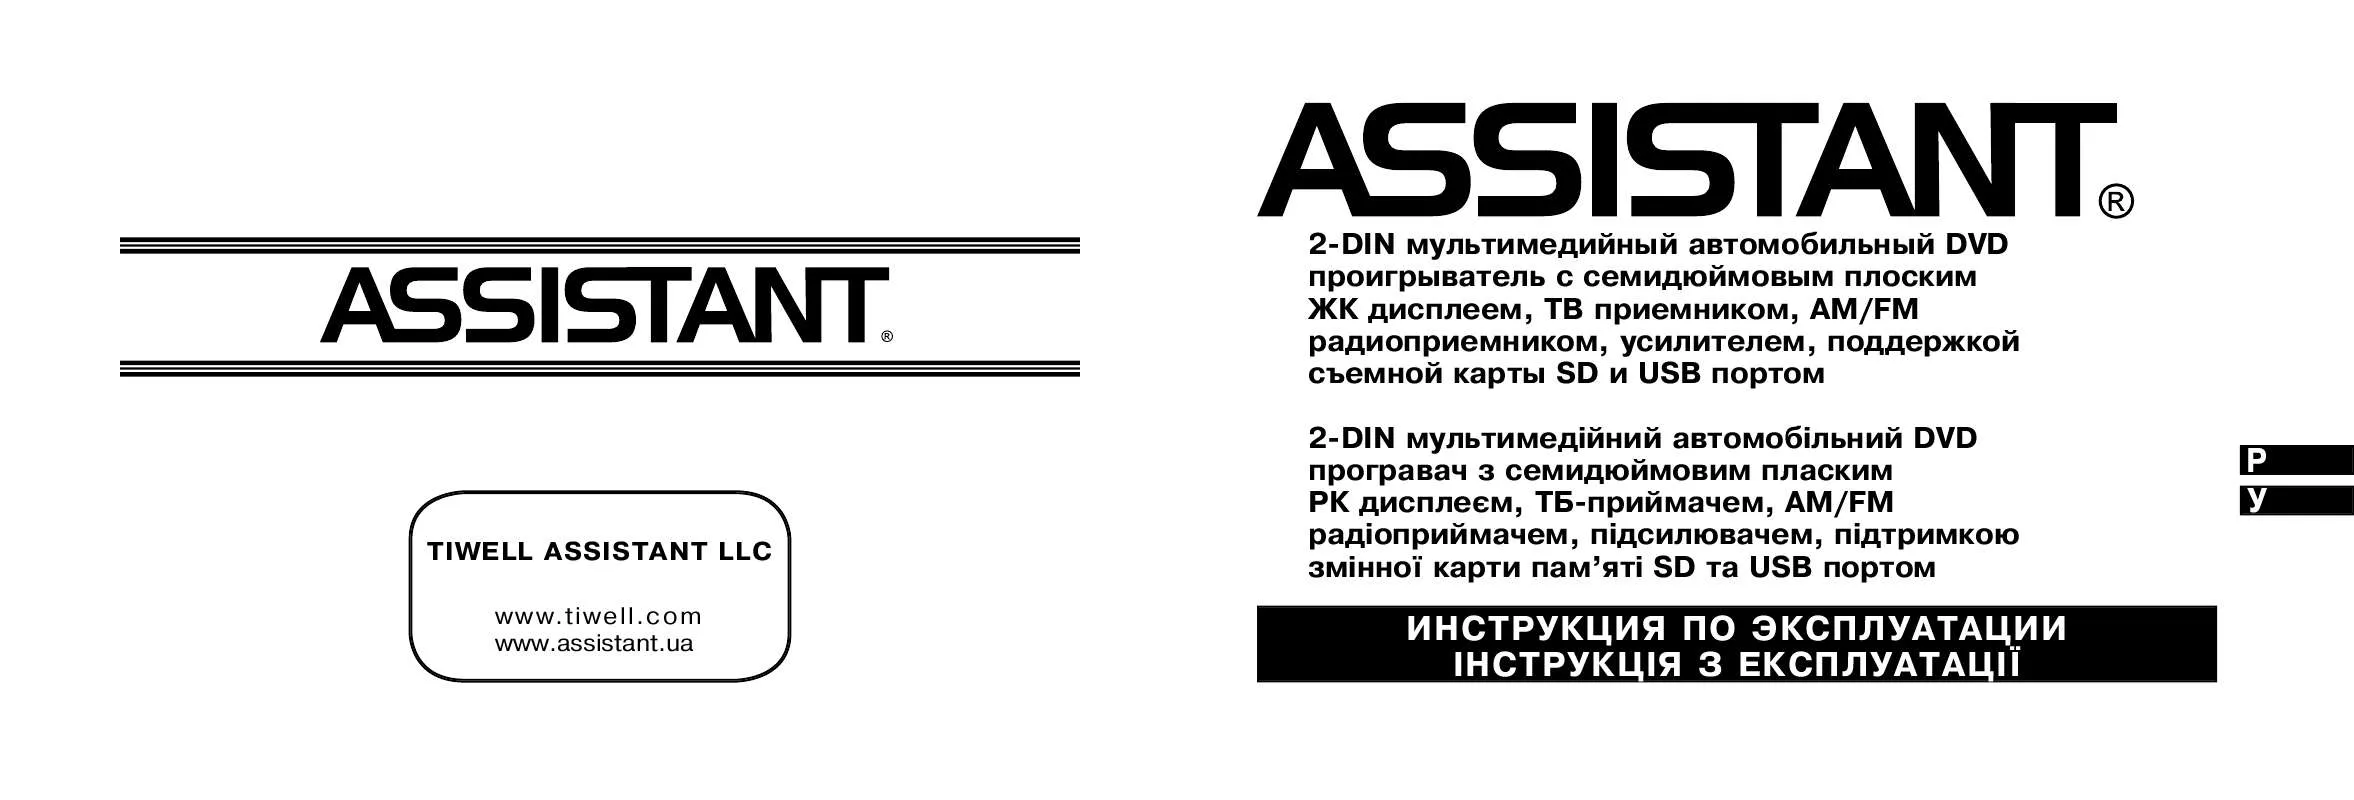 Mode d'emploi ASSISTANT AV-70003